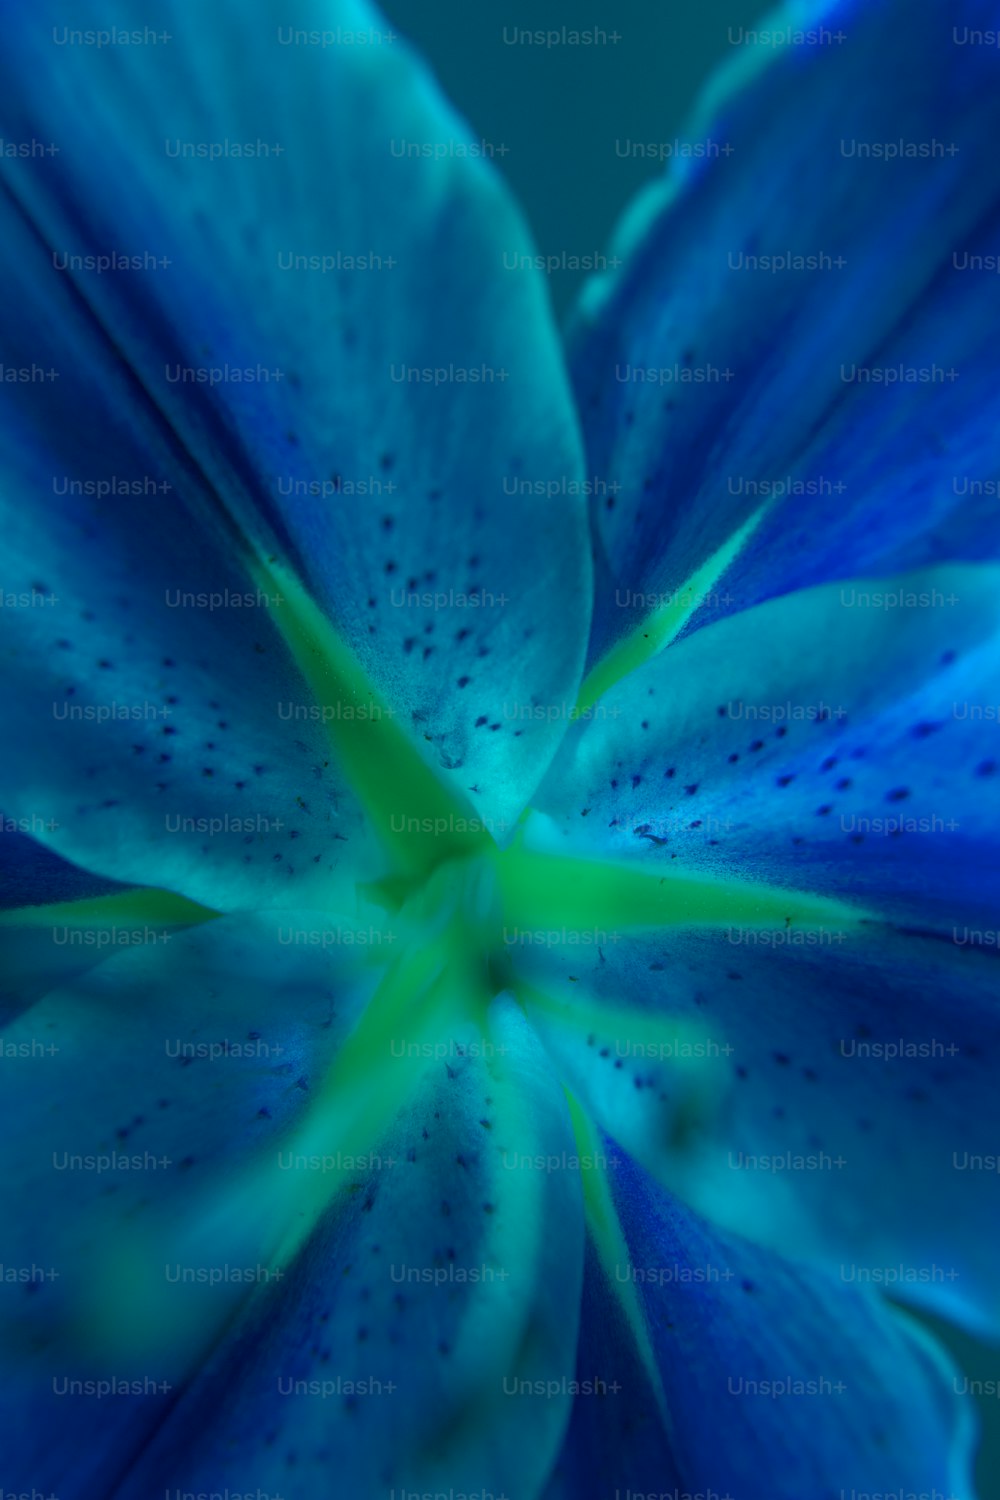 Eine Nahaufnahme einer blauen Blume mit einem grünen Zentrum